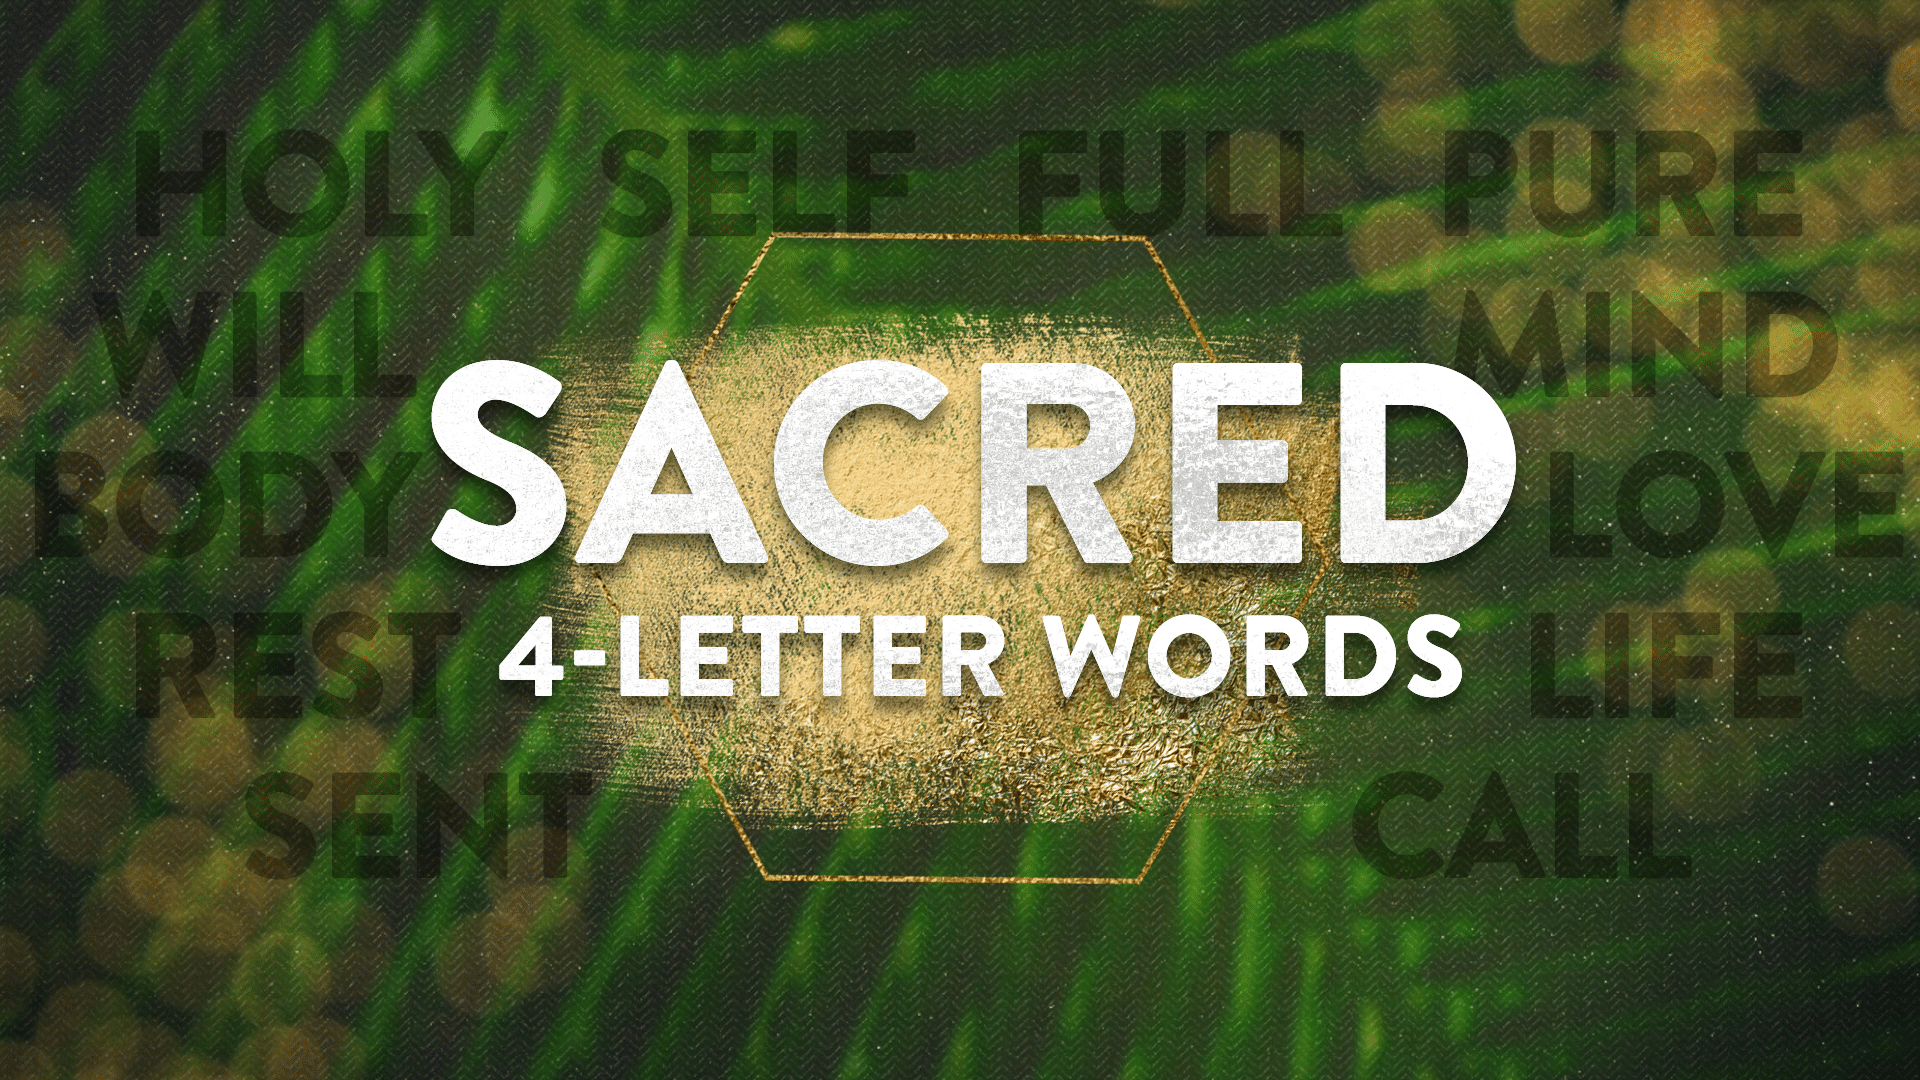 Sacred 4-Letter Words: Sing